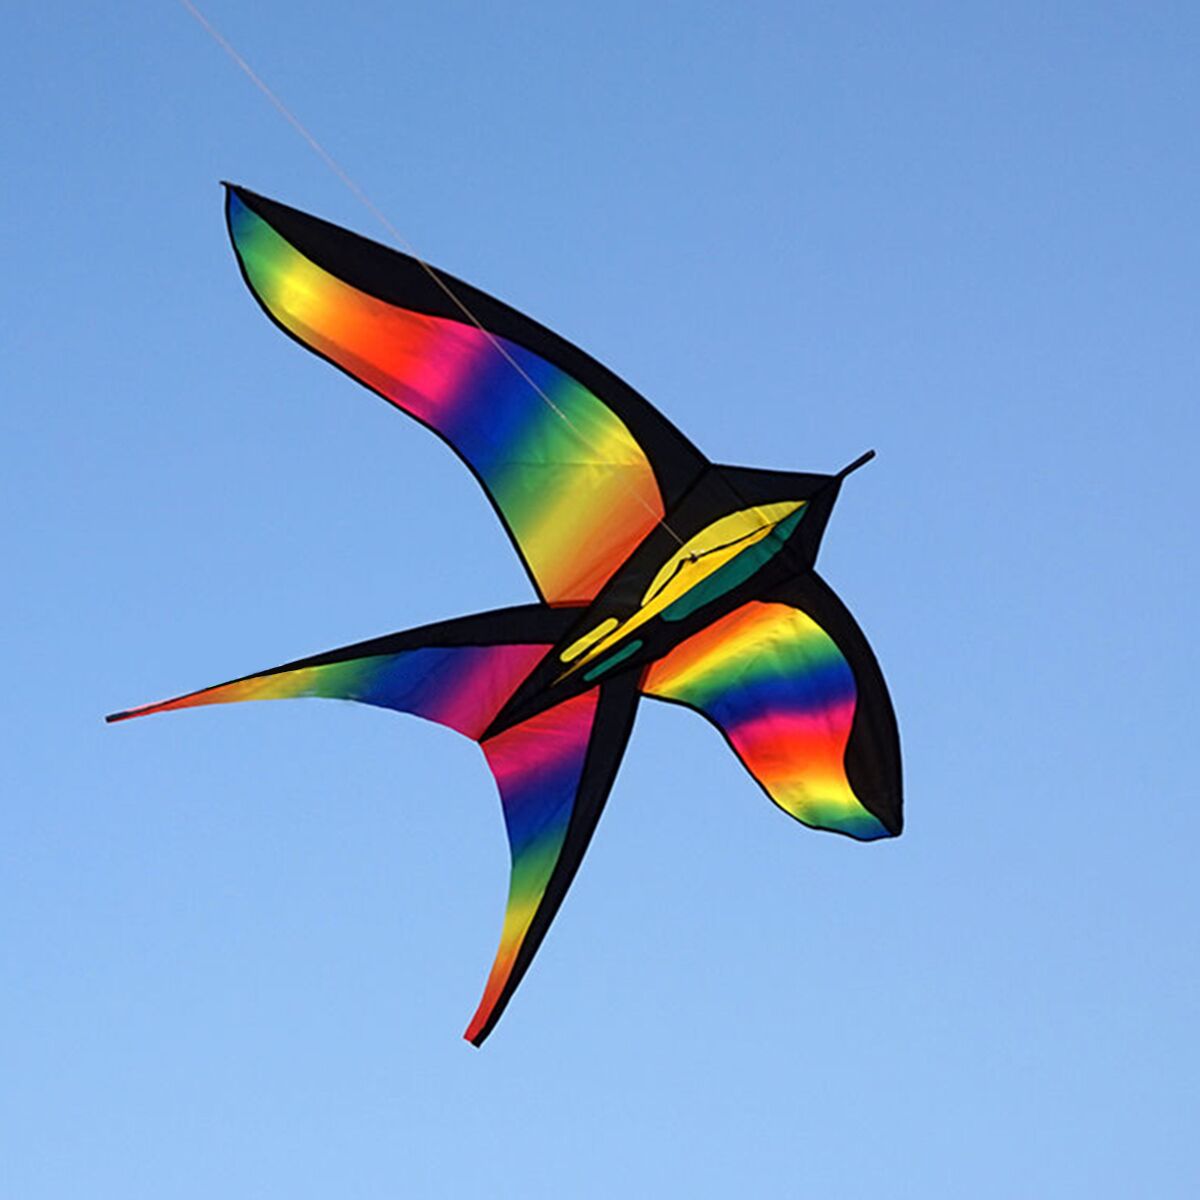 68in-Swallow-Kite-Bird-Kites-Single-Line-Outdoor-Fun-Sports-Toys-Delta-For-Kids-1130511-2